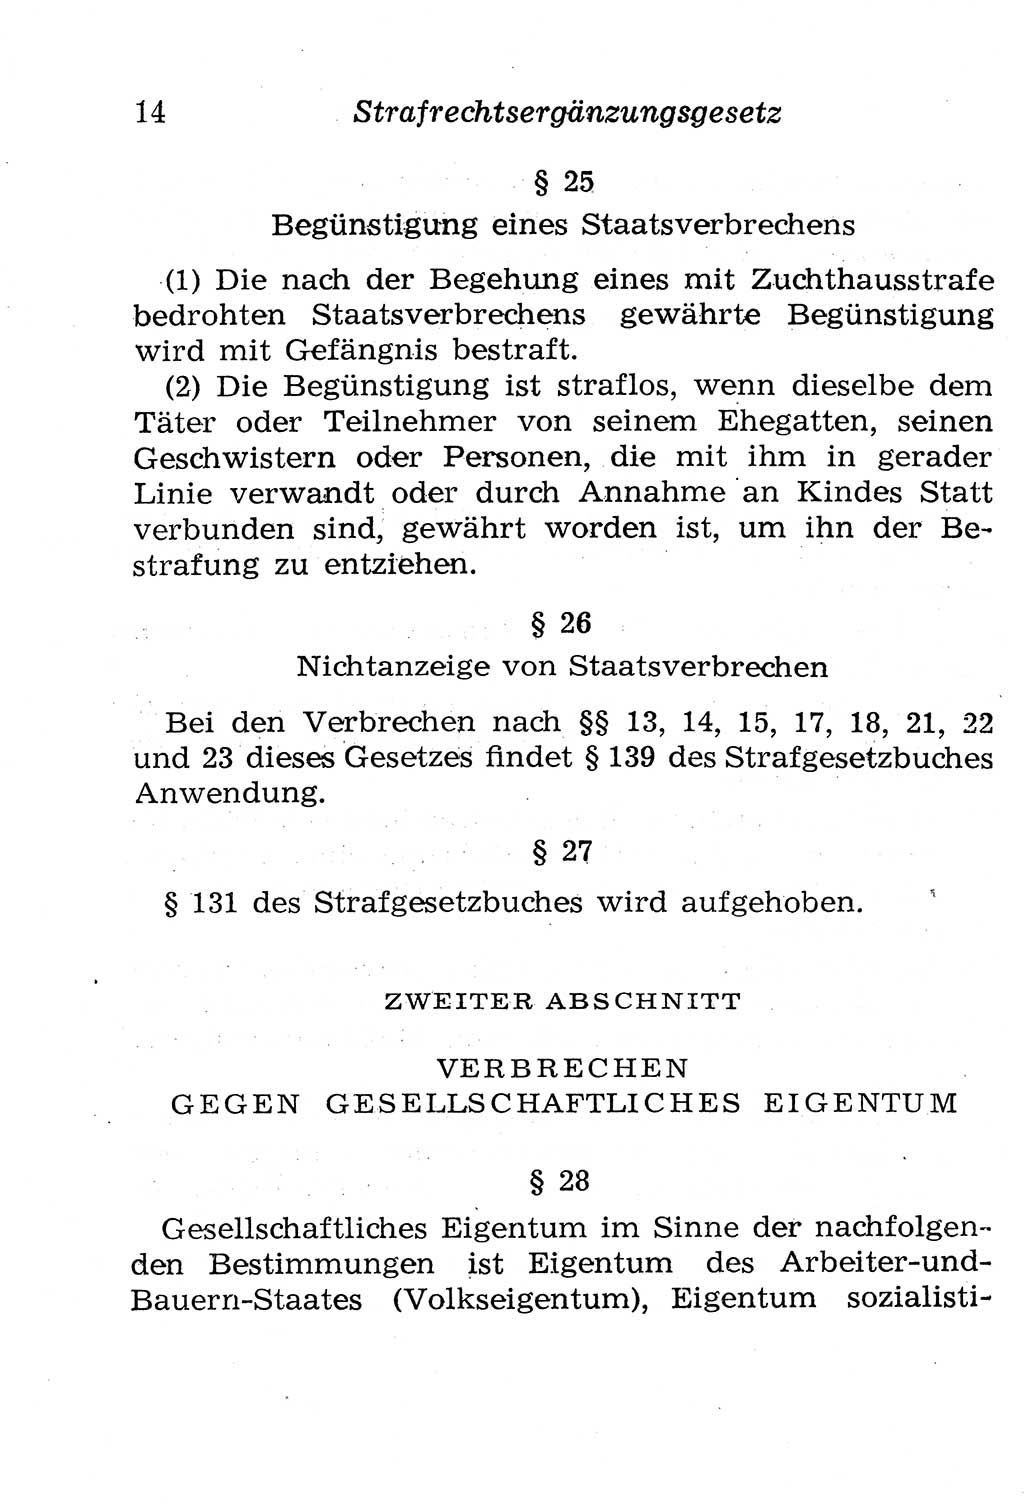 Strafgesetzbuch (StGB) und andere Strafgesetze [Deutsche Demokratische Republik (DDR)] 1958, Seite 14 (StGB Strafges. DDR 1958, S. 14)